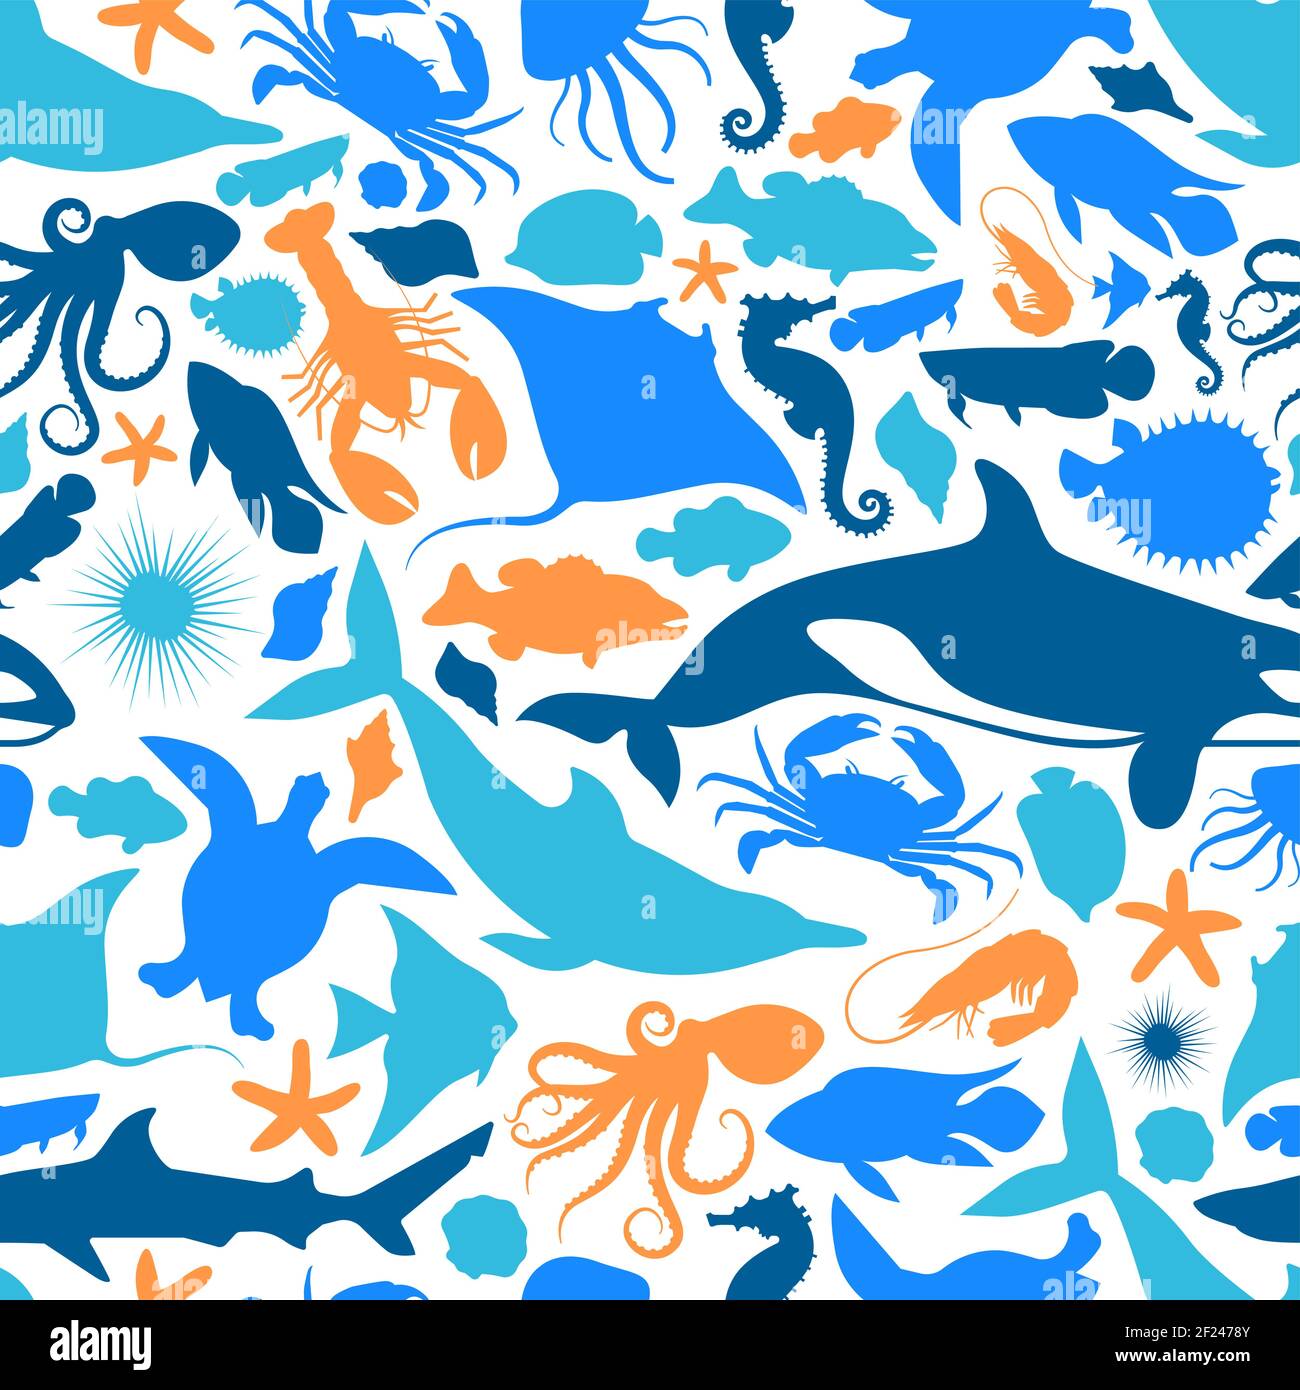 Wildwasser Tier Symbol nahtlose Muster Illustration. Blaue Meerestiere Silhouette Hintergrund für aquatische Meer Leben Vielfalt Konzept oder Korallenriff p Stock Vektor